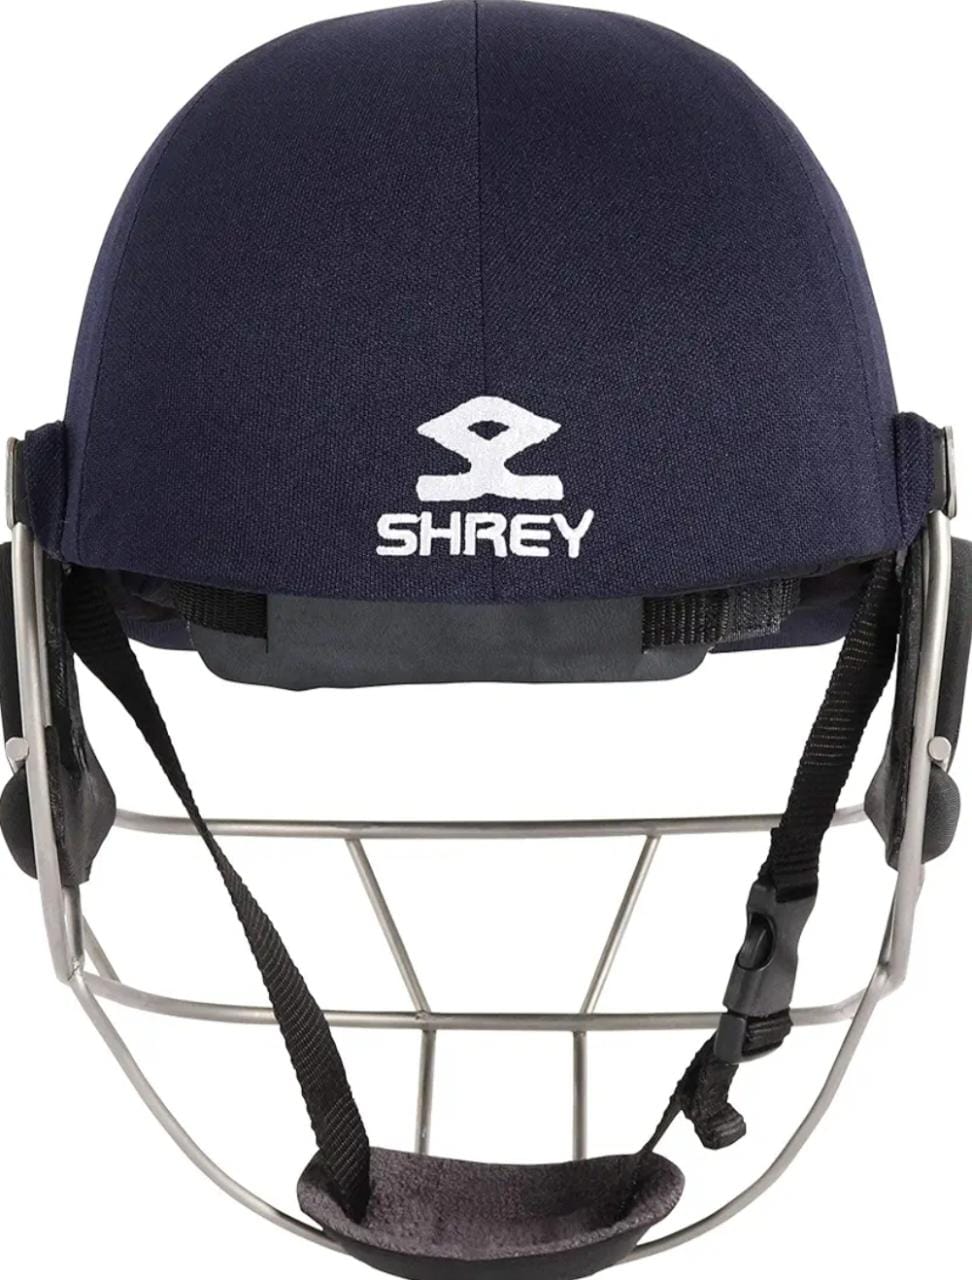 Cricket Helmet  SHREY M/C AIR WITH SS VISOR